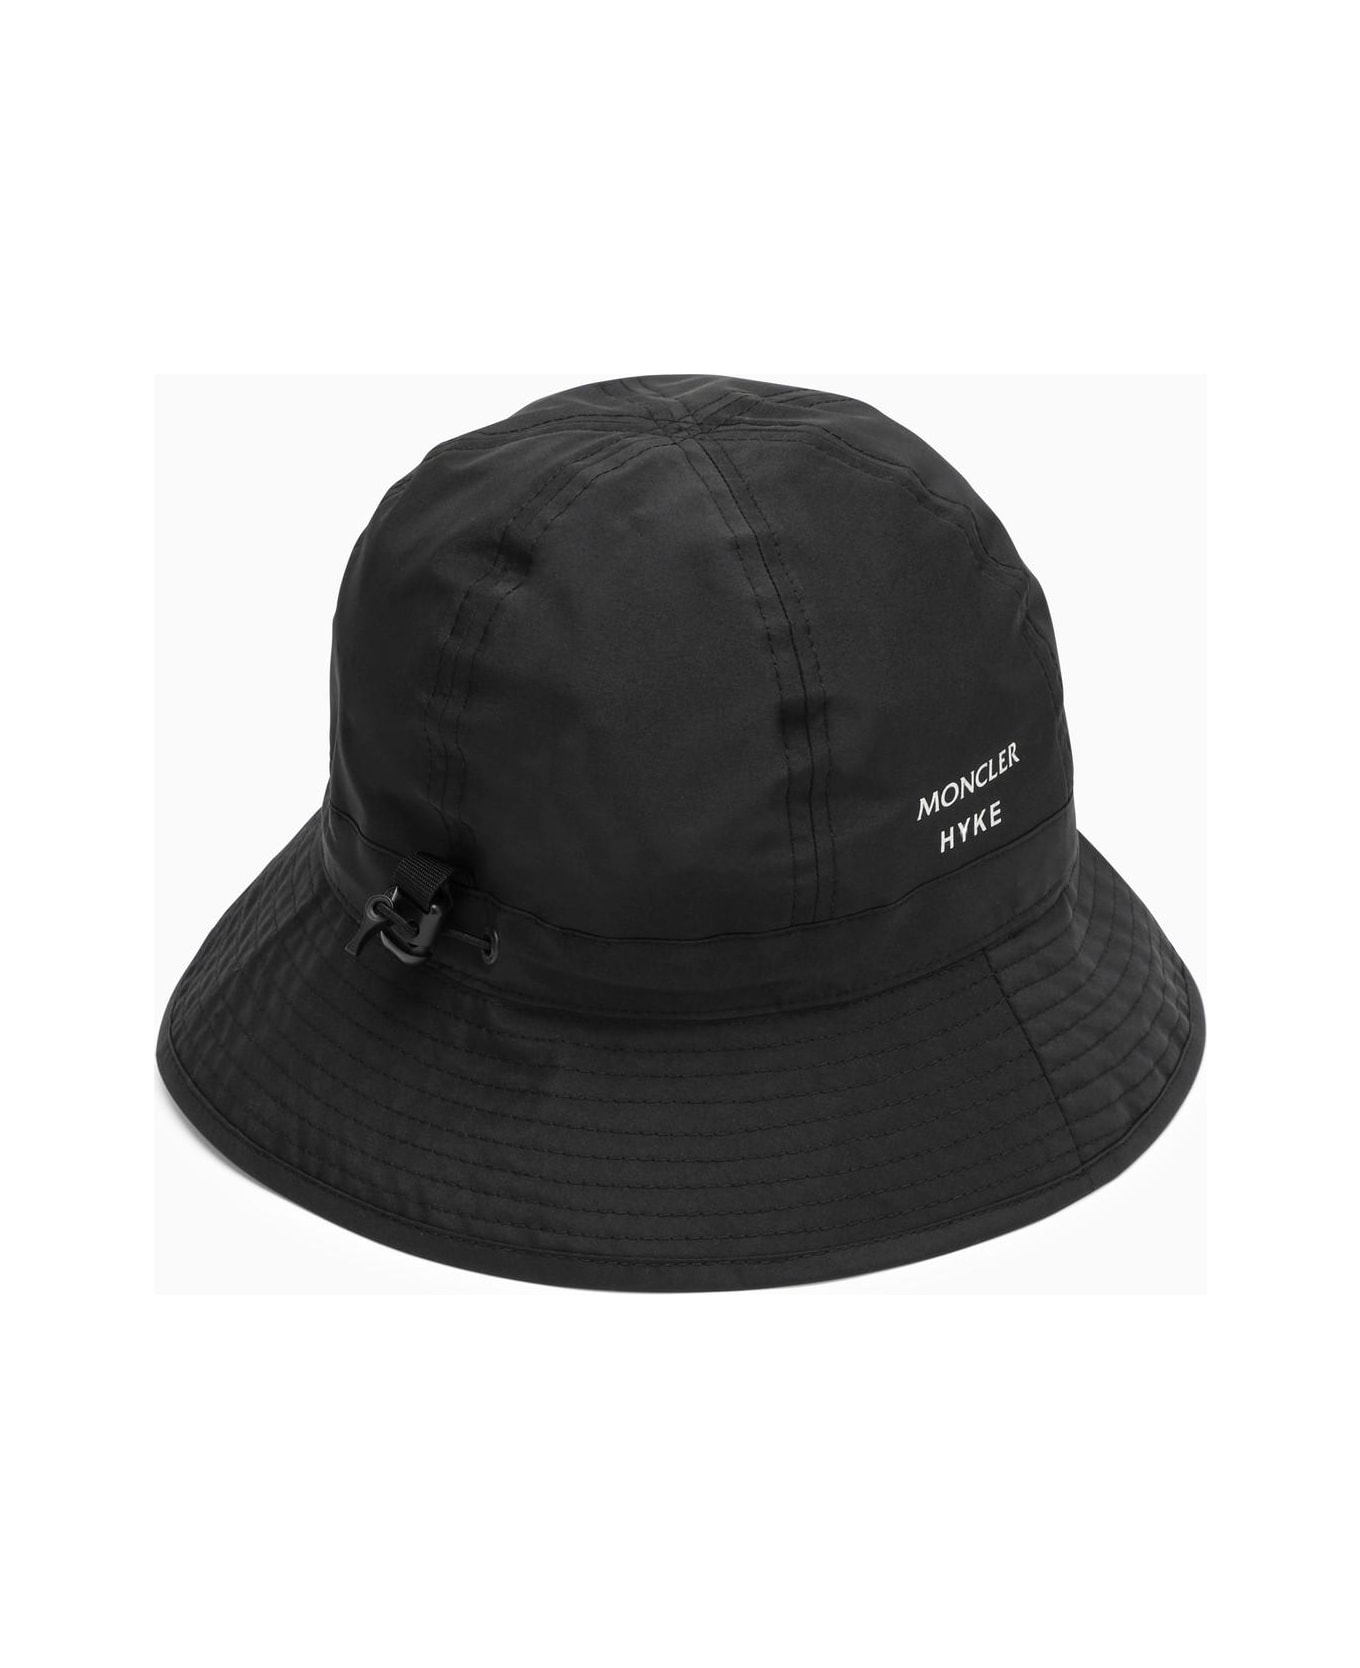 Moncler Genius Nylon Black Hat - Nero 帽子